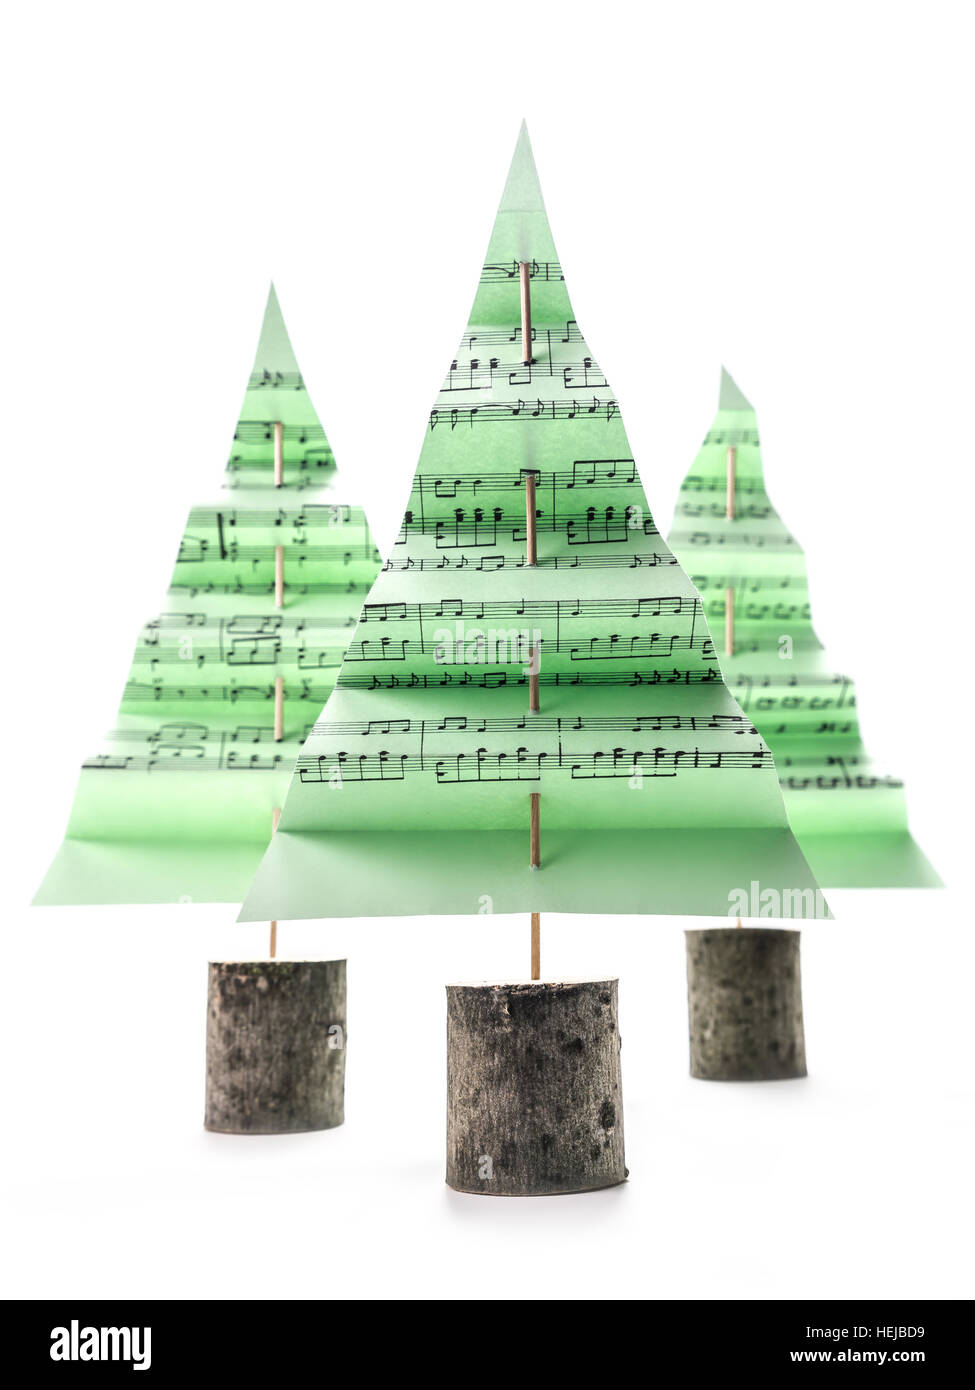 Drei grüne Papier-Weihnachtsbäume mit Christmas carol Notizen auf weißem Hintergrund Stockfoto